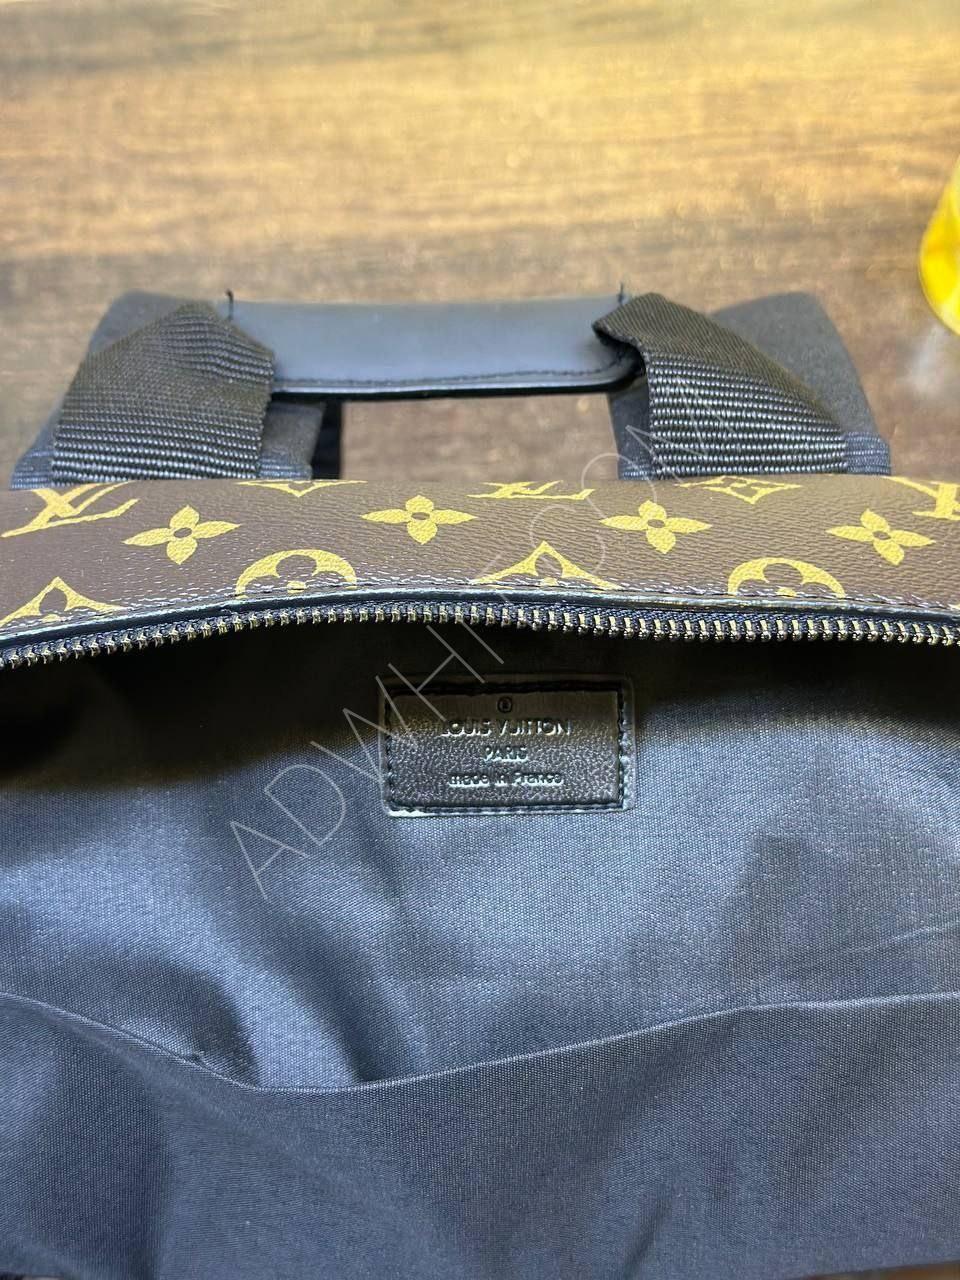 Medium size Louis Vuitton travel bag - Price : 38 US Dollar - Adwhit -  Turkey